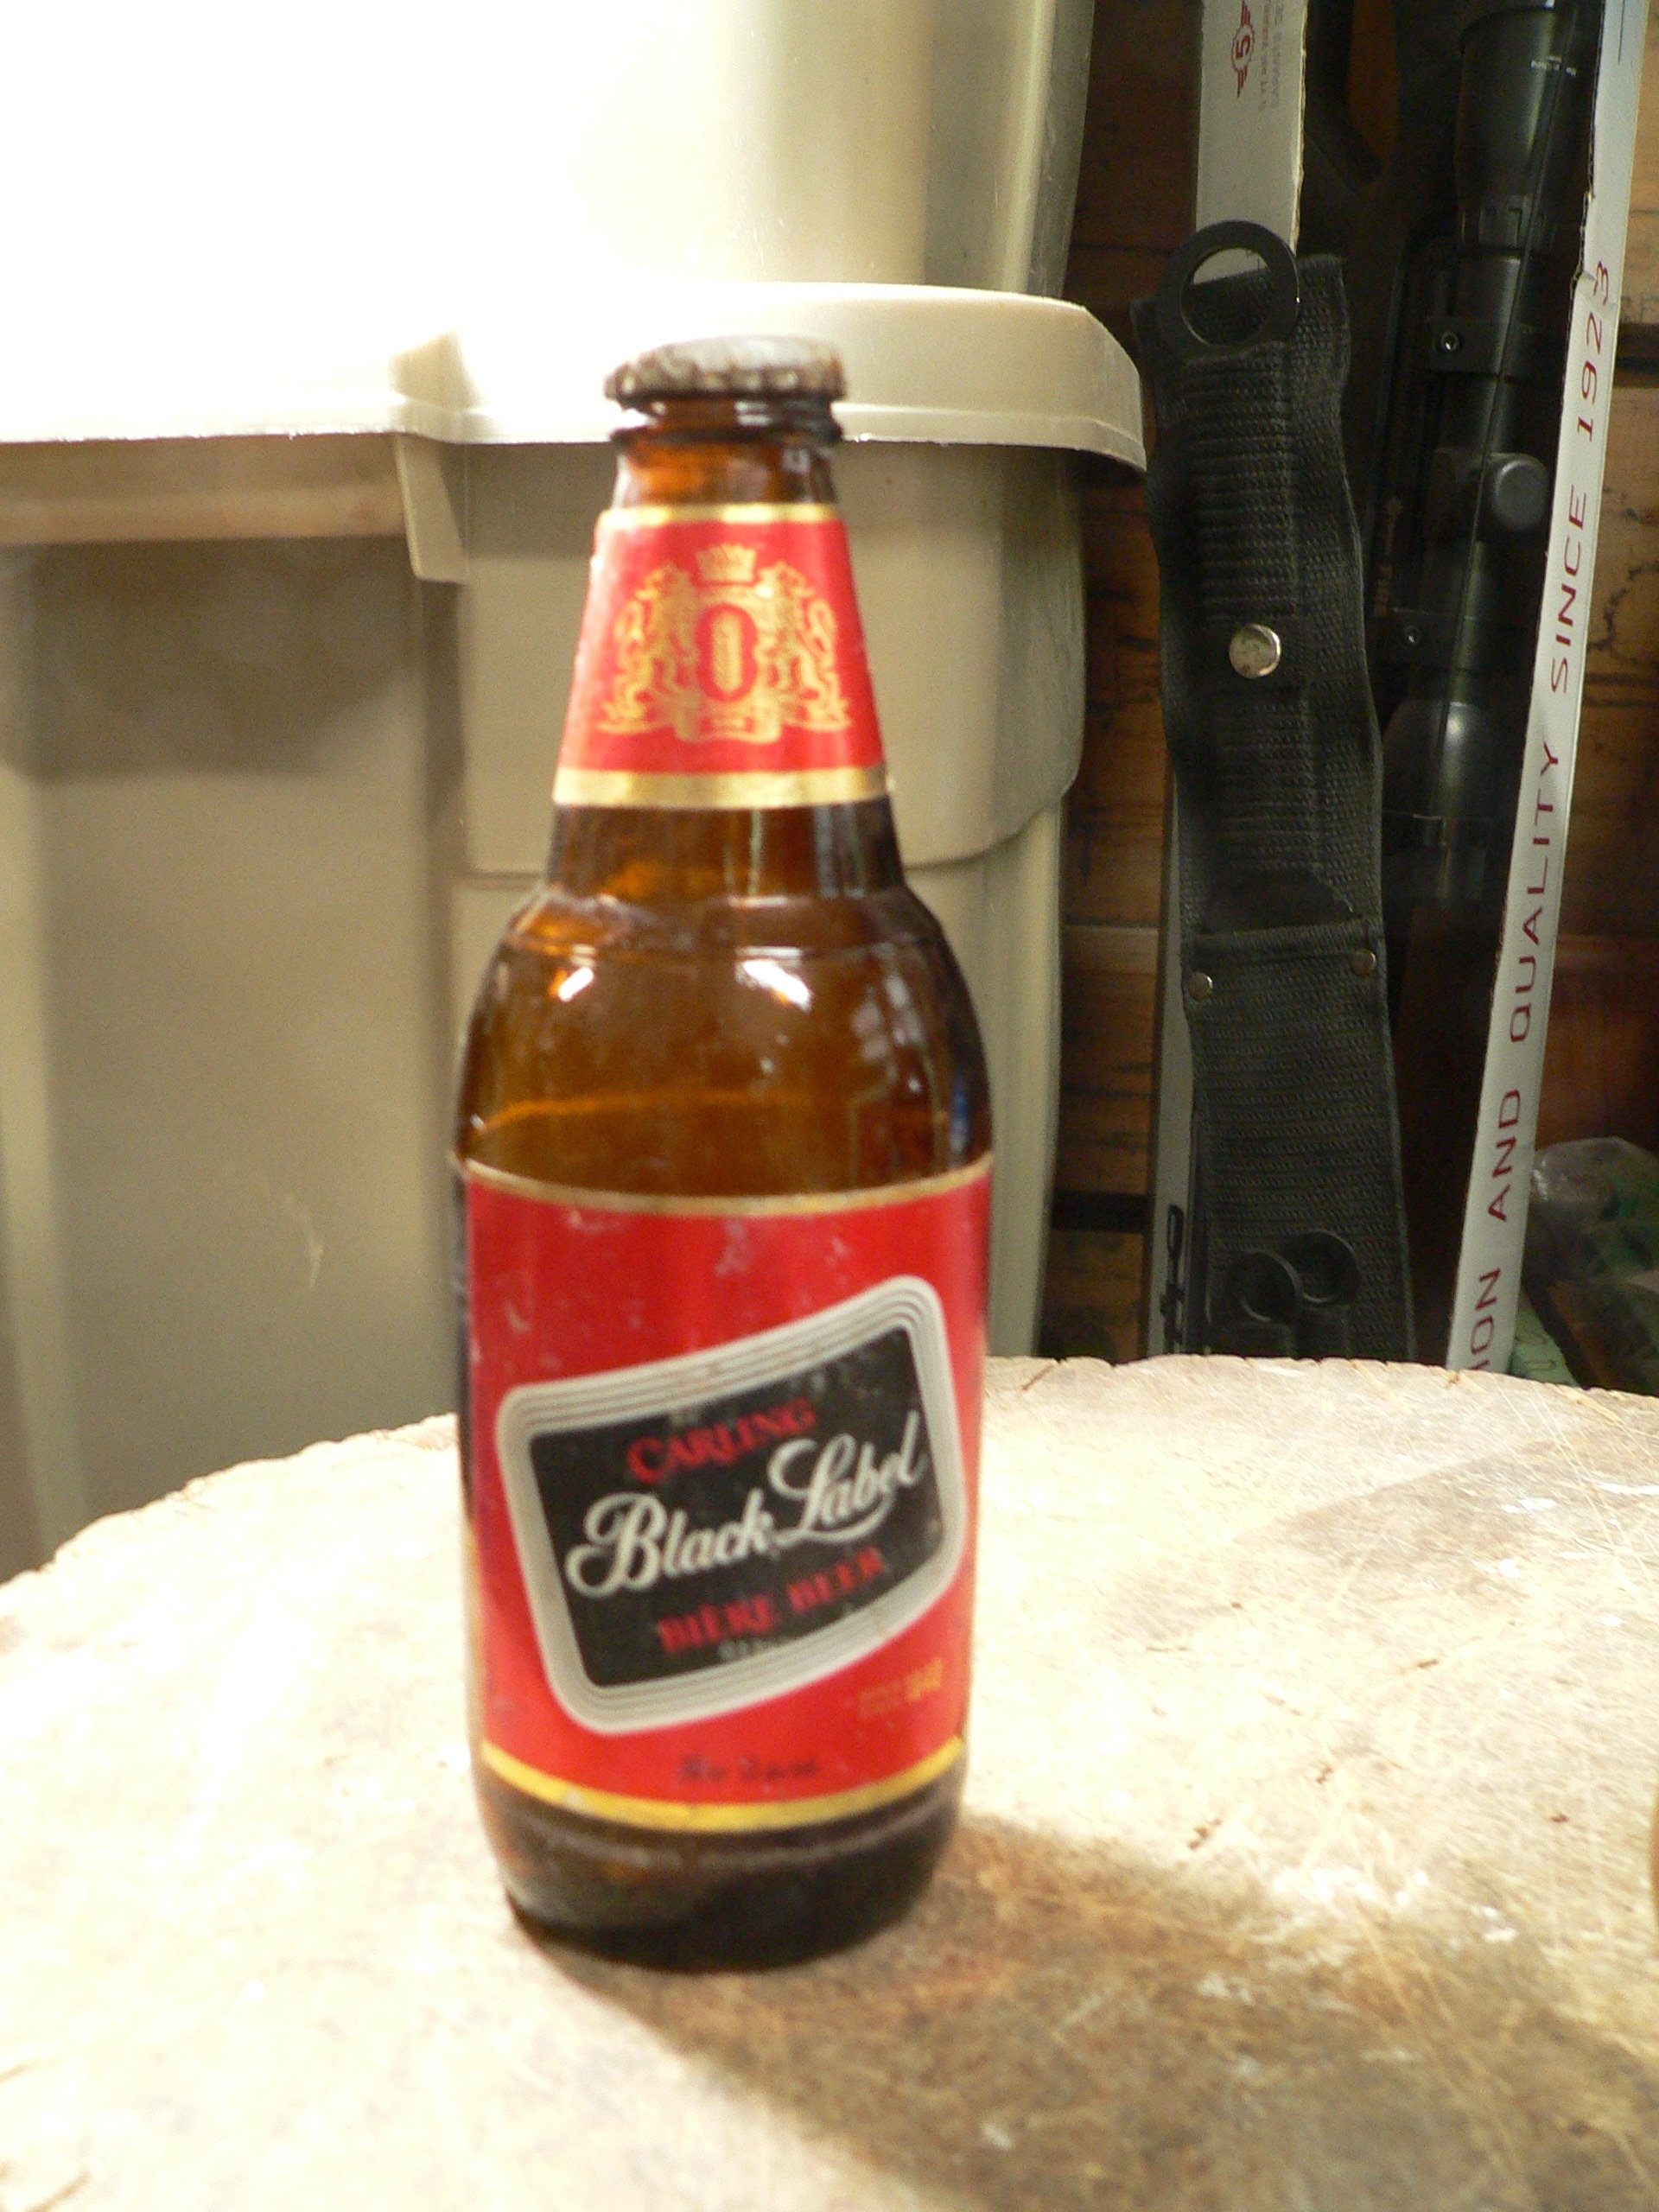 Bouteille bière vintage Carling black label # 9858.14